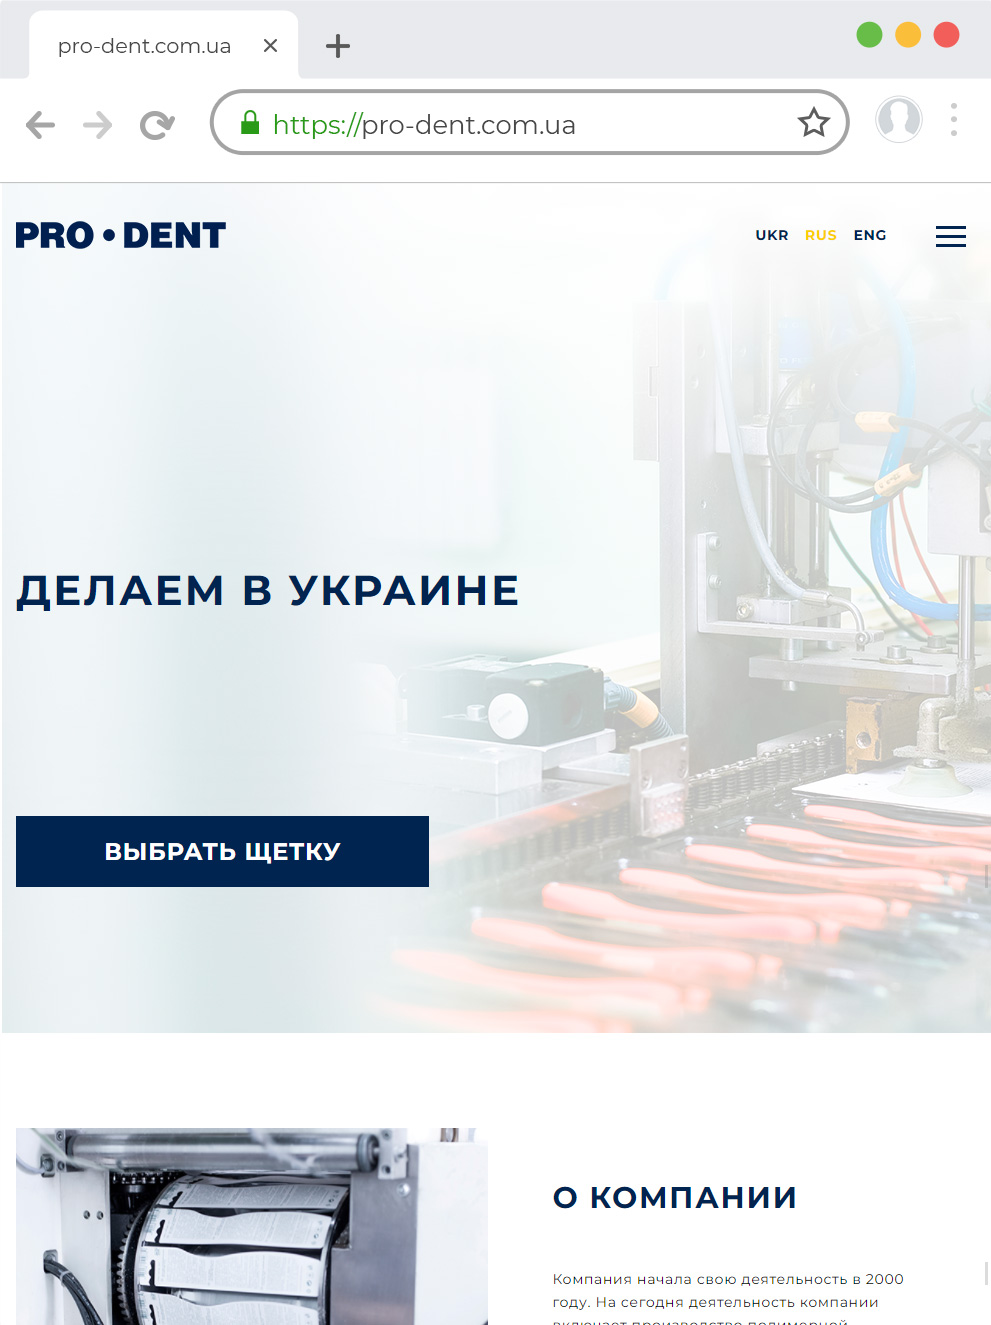 Создание сайта по производству зубных щёток в Украине | Веб Студия БАСТ